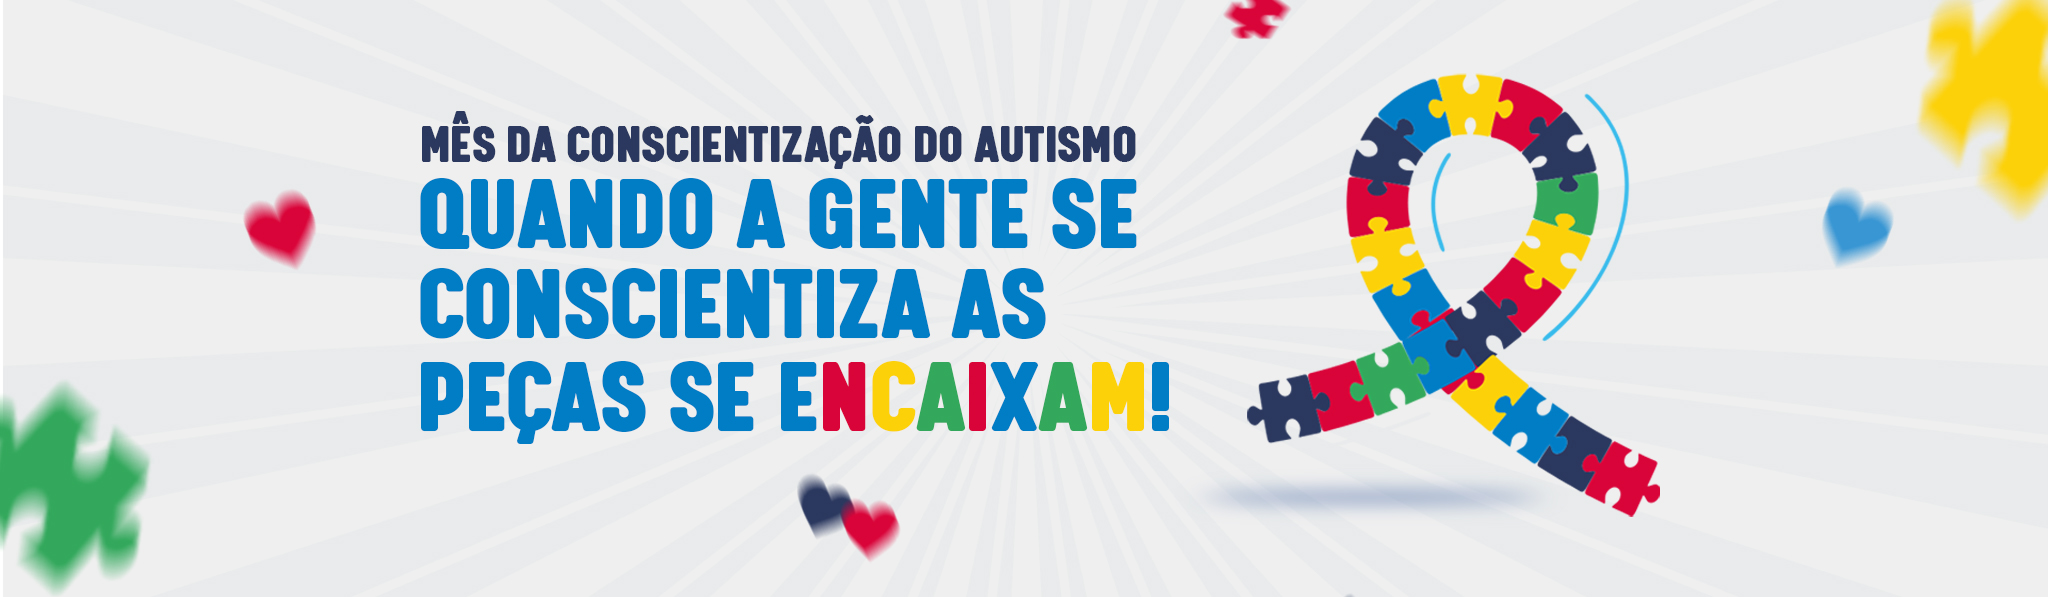 Cajamar terá programação especial no mês de conscientização do autismo